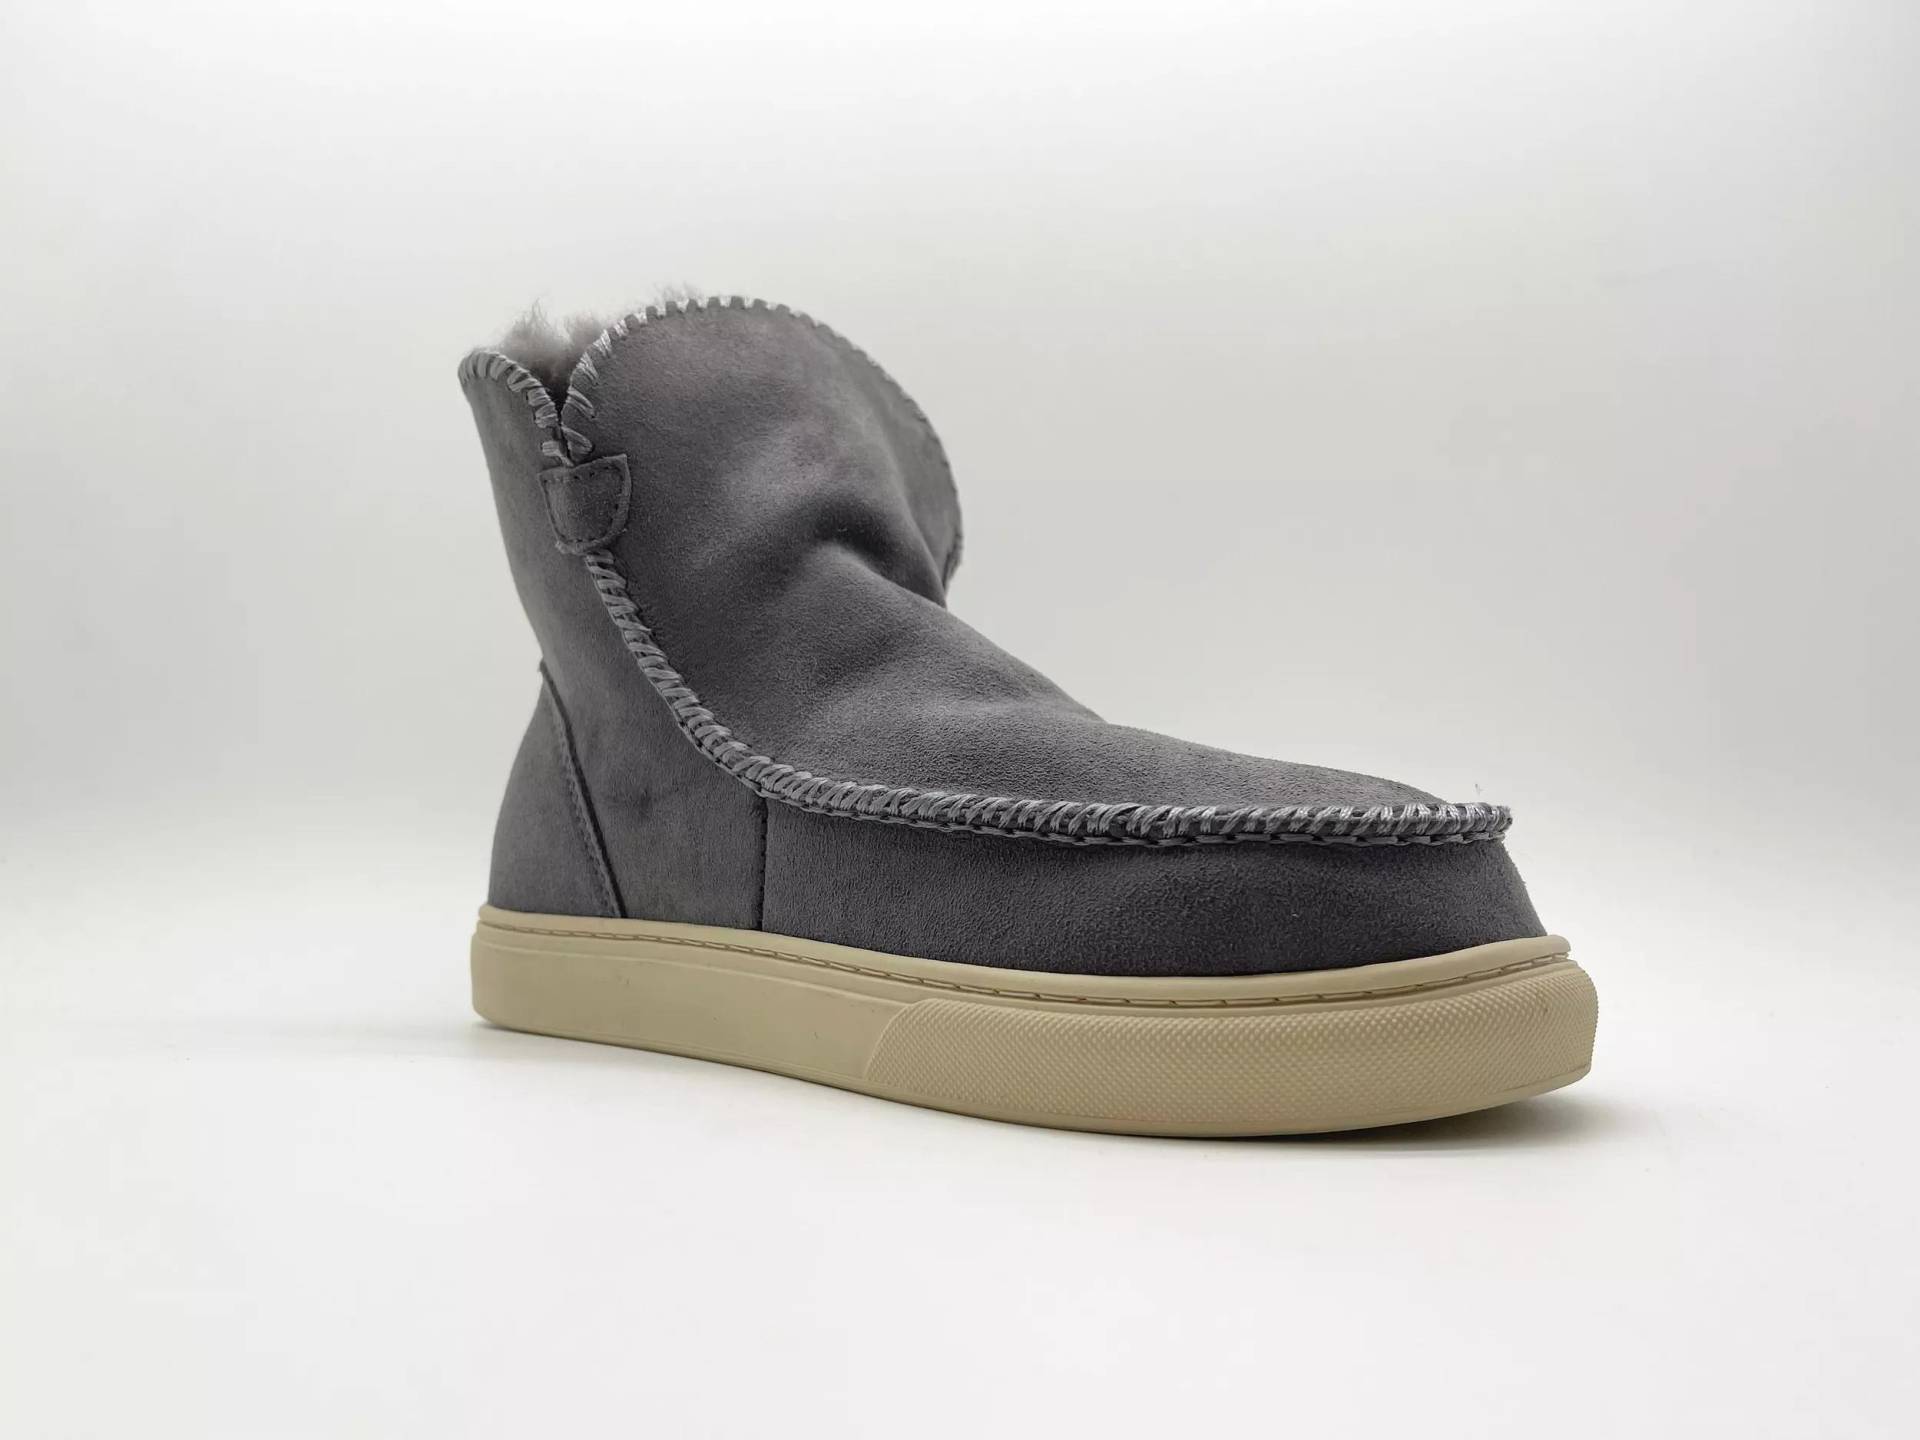 thies Sneakers - thies 1856 ® Sneakerboot 2 dark grey (W) - Gr. 41 (EU) - in Grau - für Damen von thies